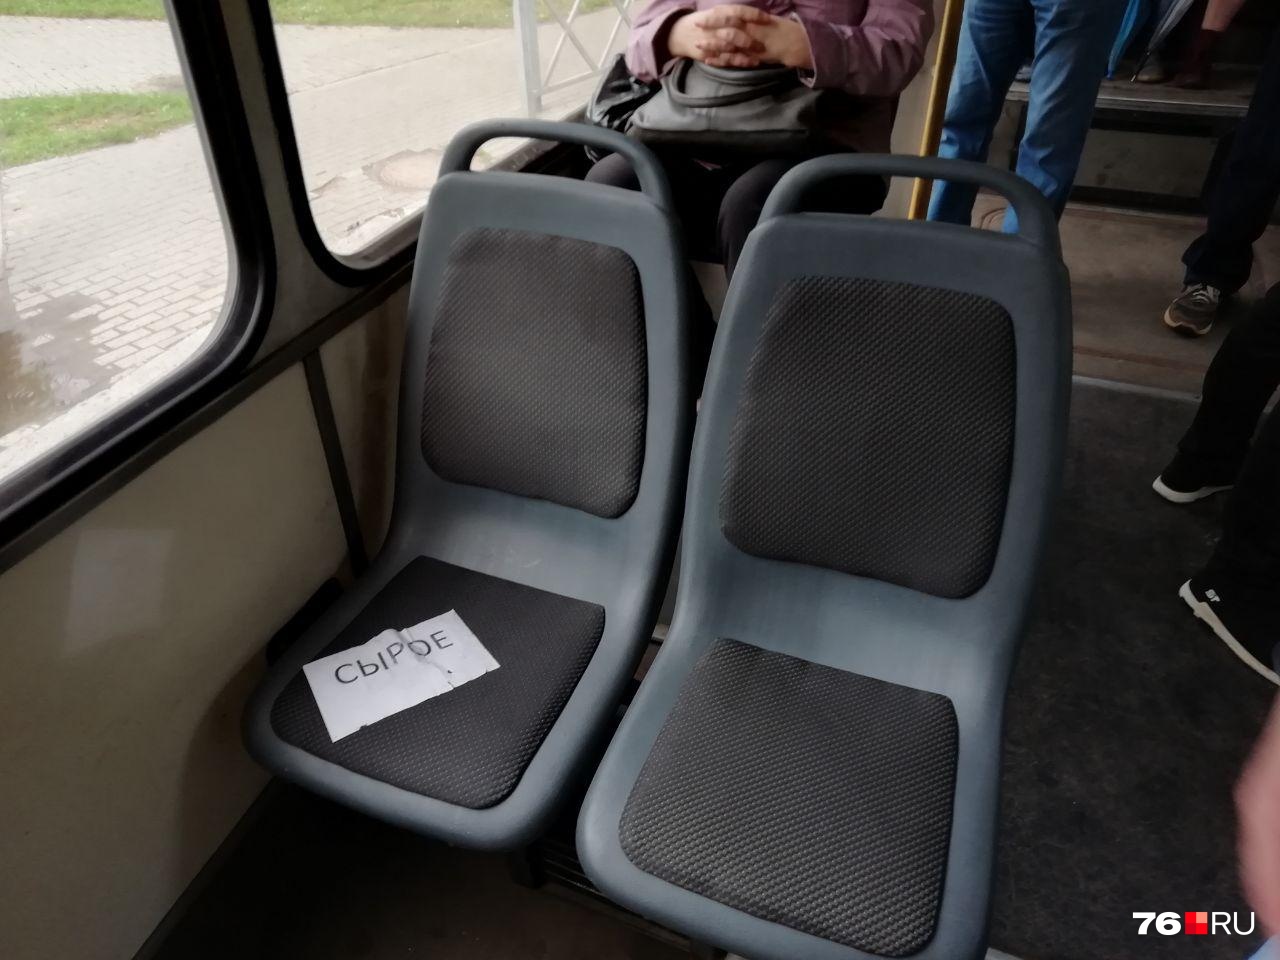 В некоторых автобусах и троллейбусах уже используют модель листа бумажного для слабовидящих